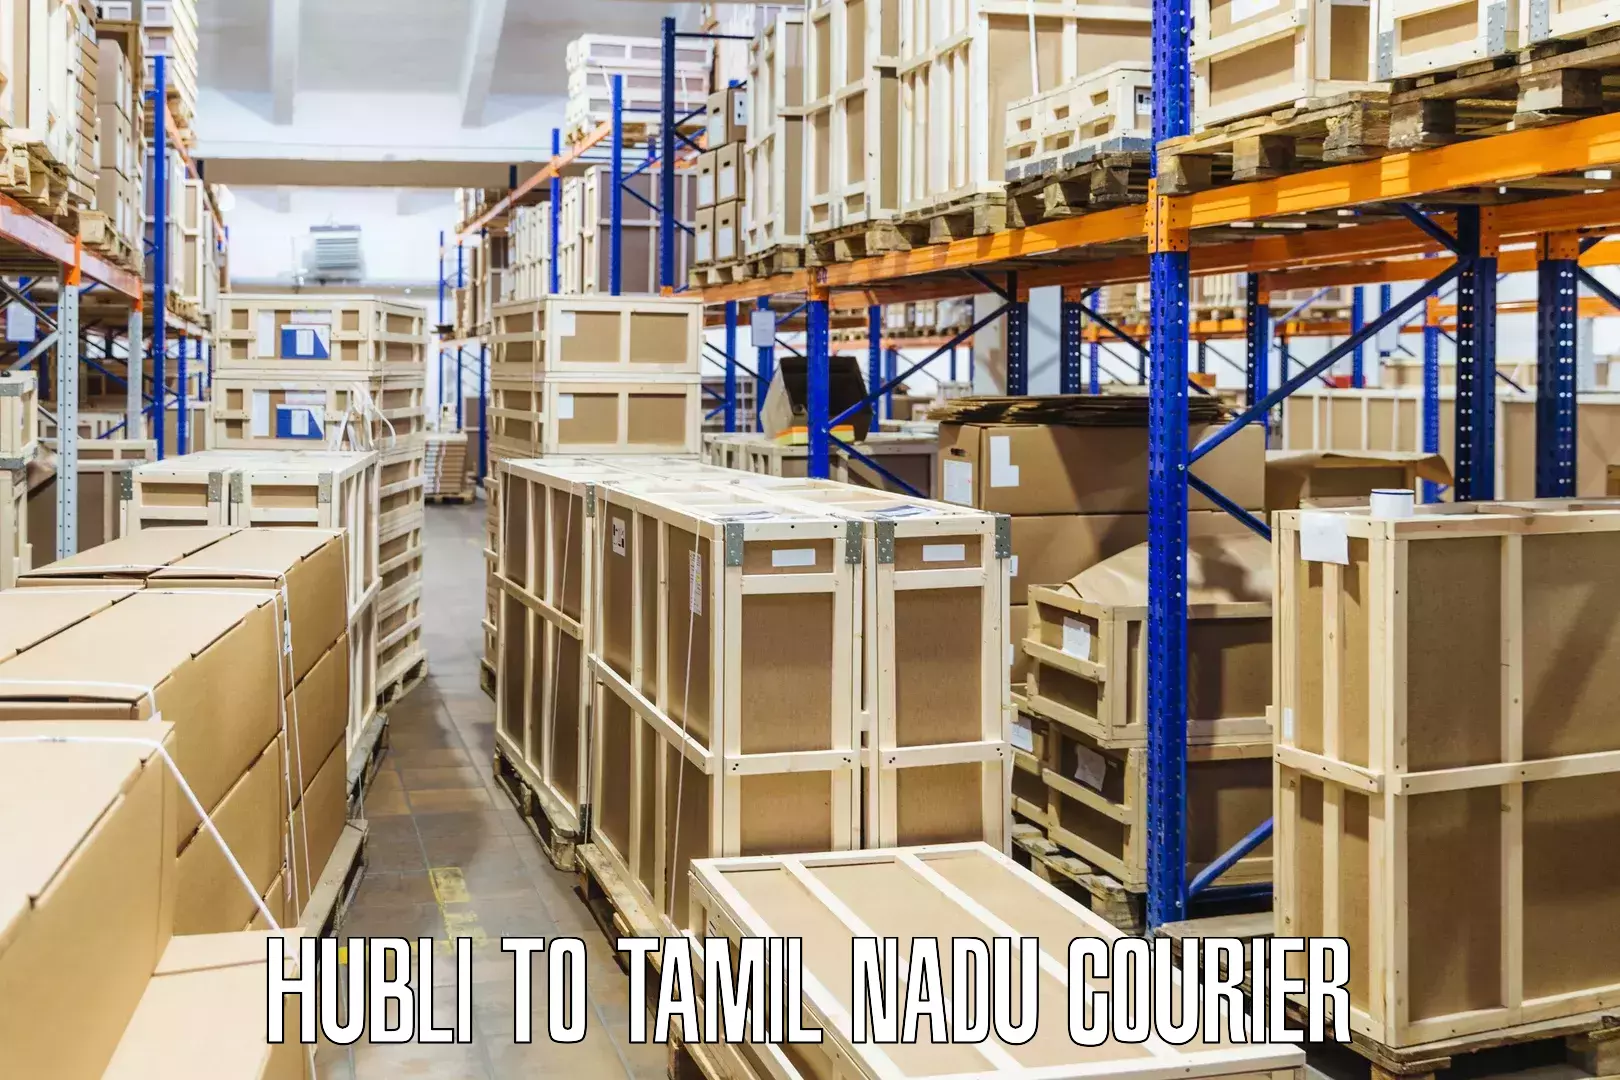 Residential courier service Hubli to Melakaveri